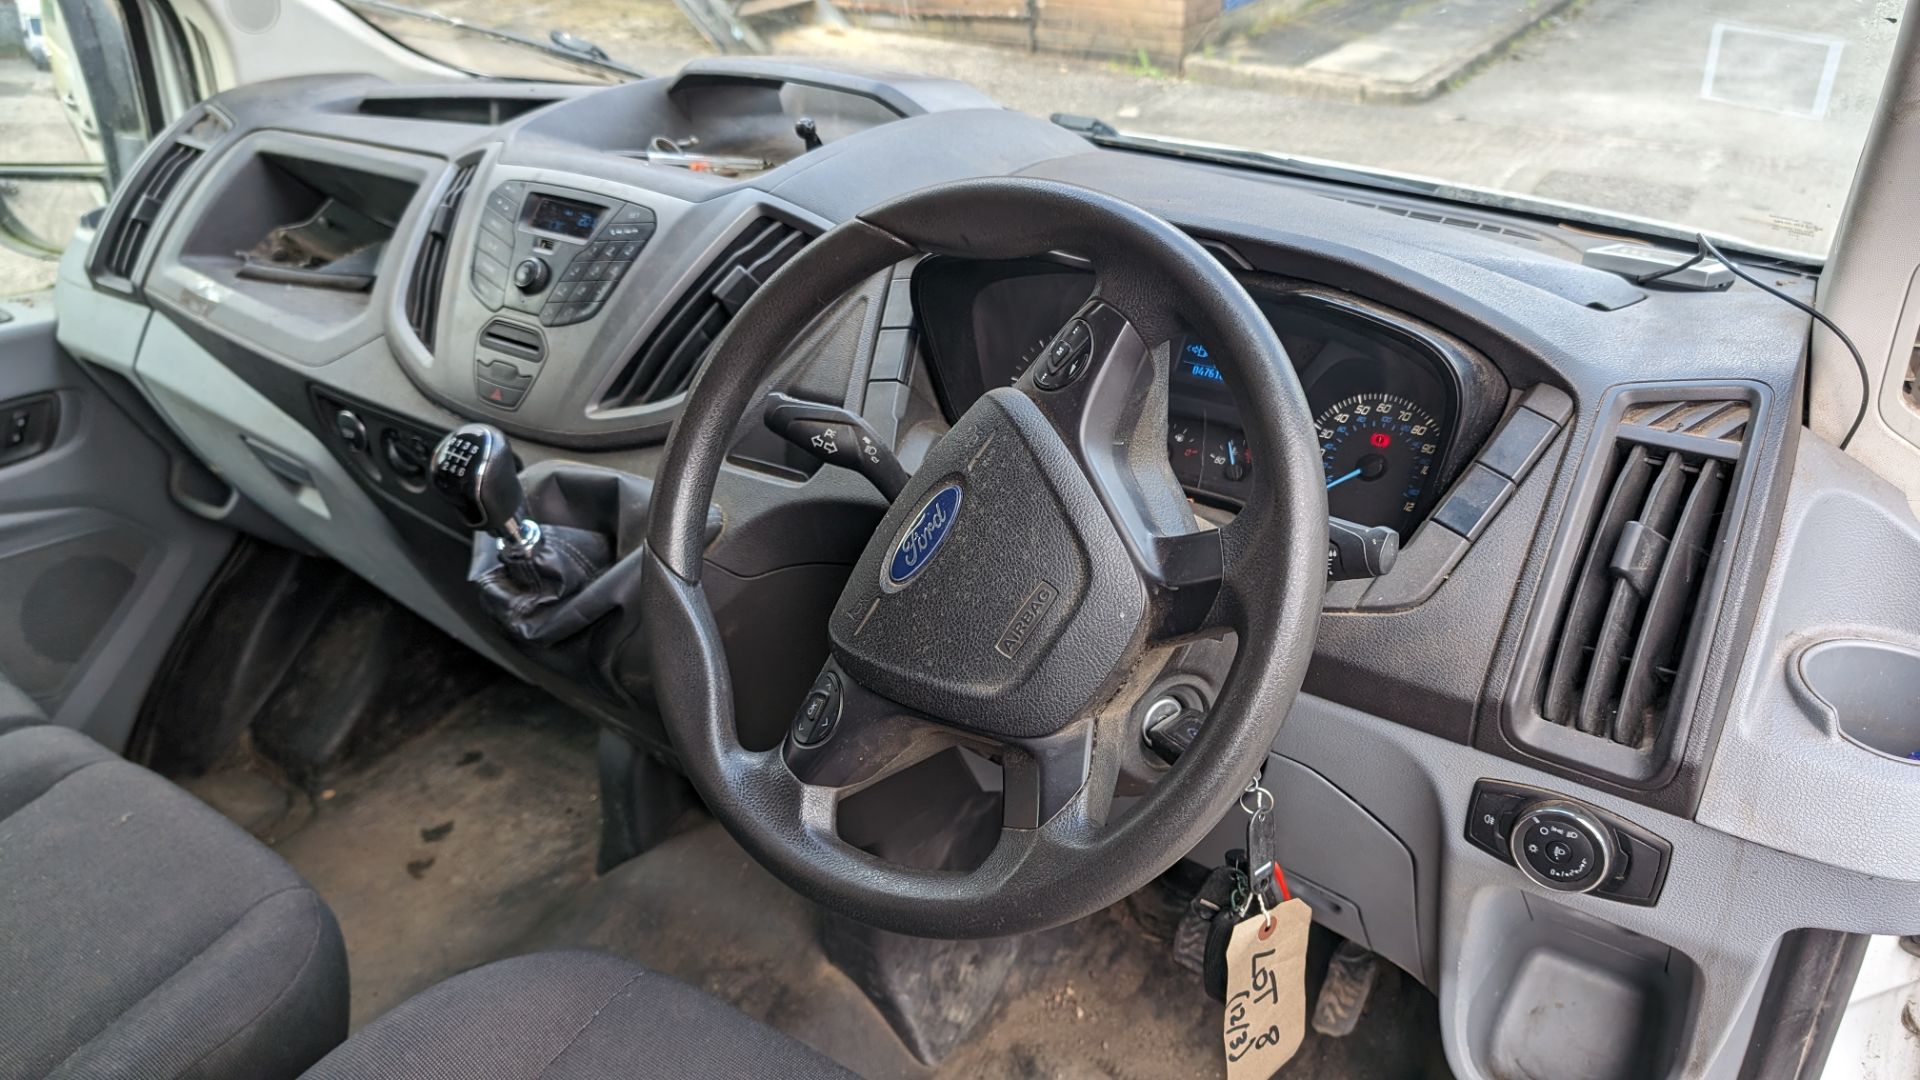 2015 Ford Transit van - Image 15 of 22